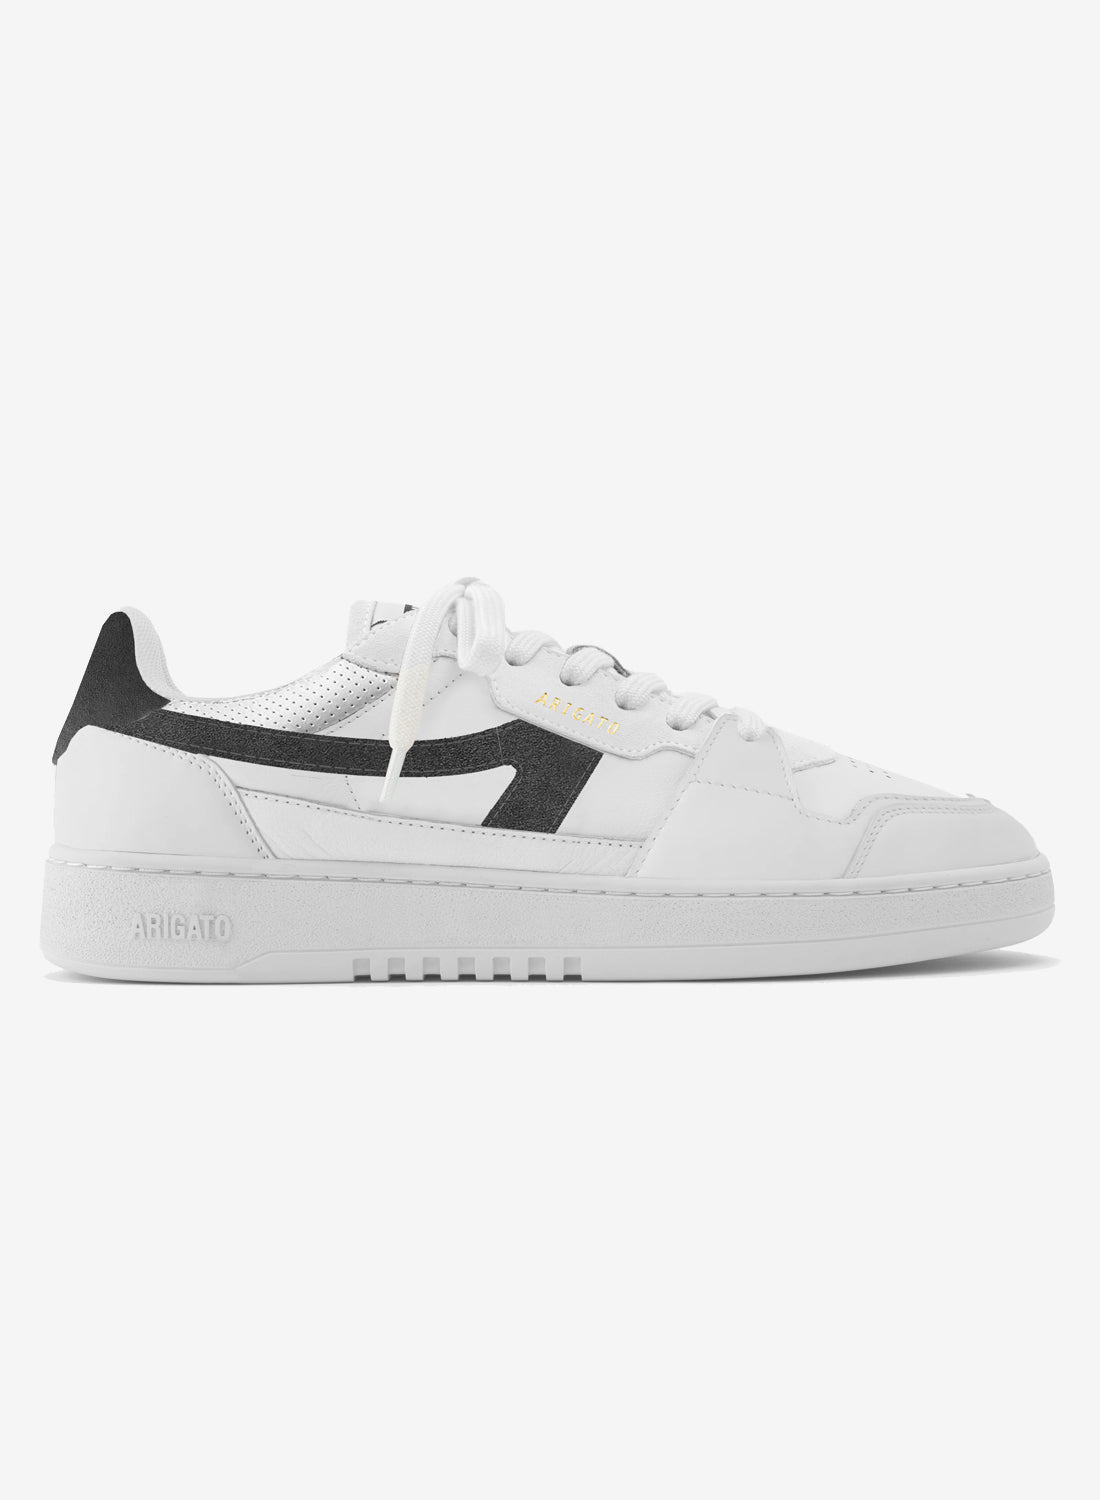 Axel Arigato Dice A Sneaker White/Black